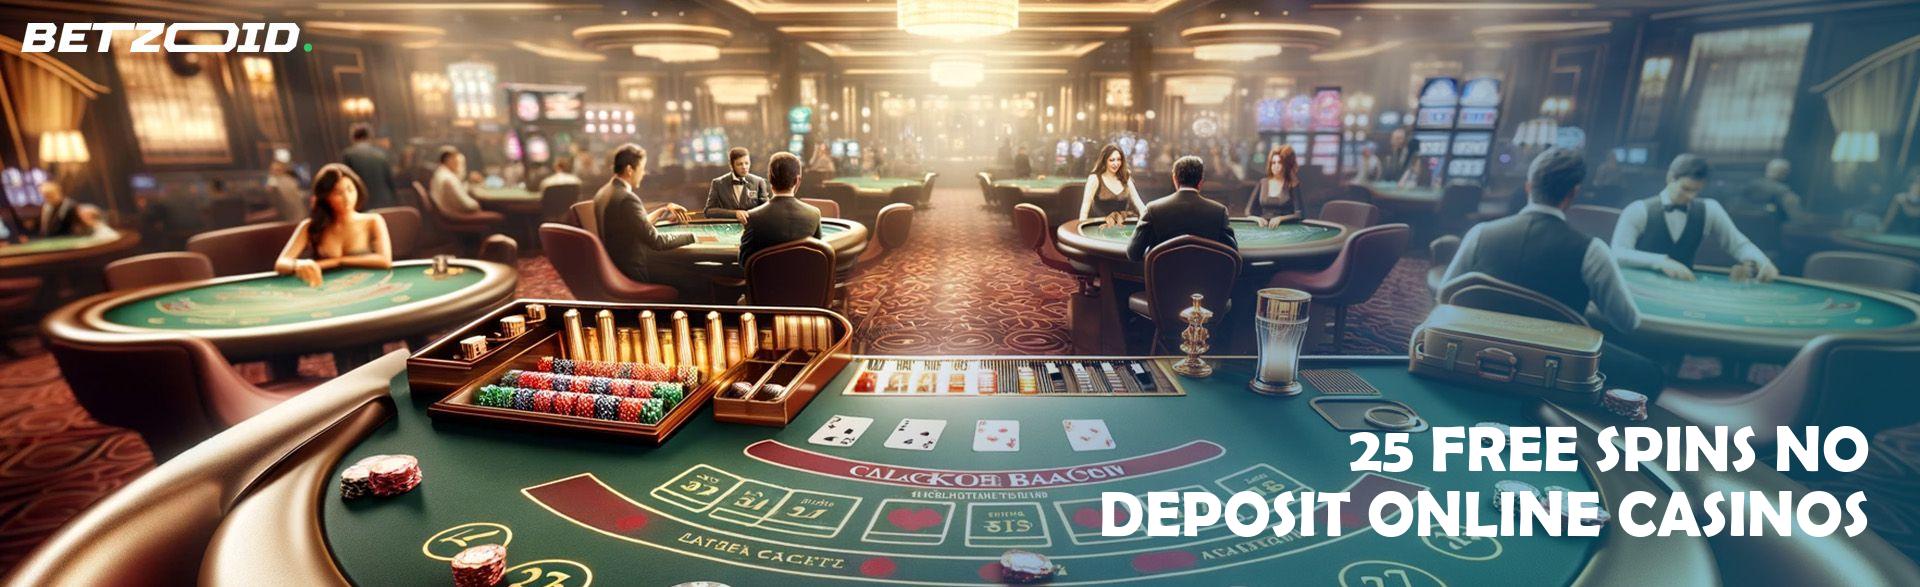 25 Free Spins No Deposit Online Casinos.